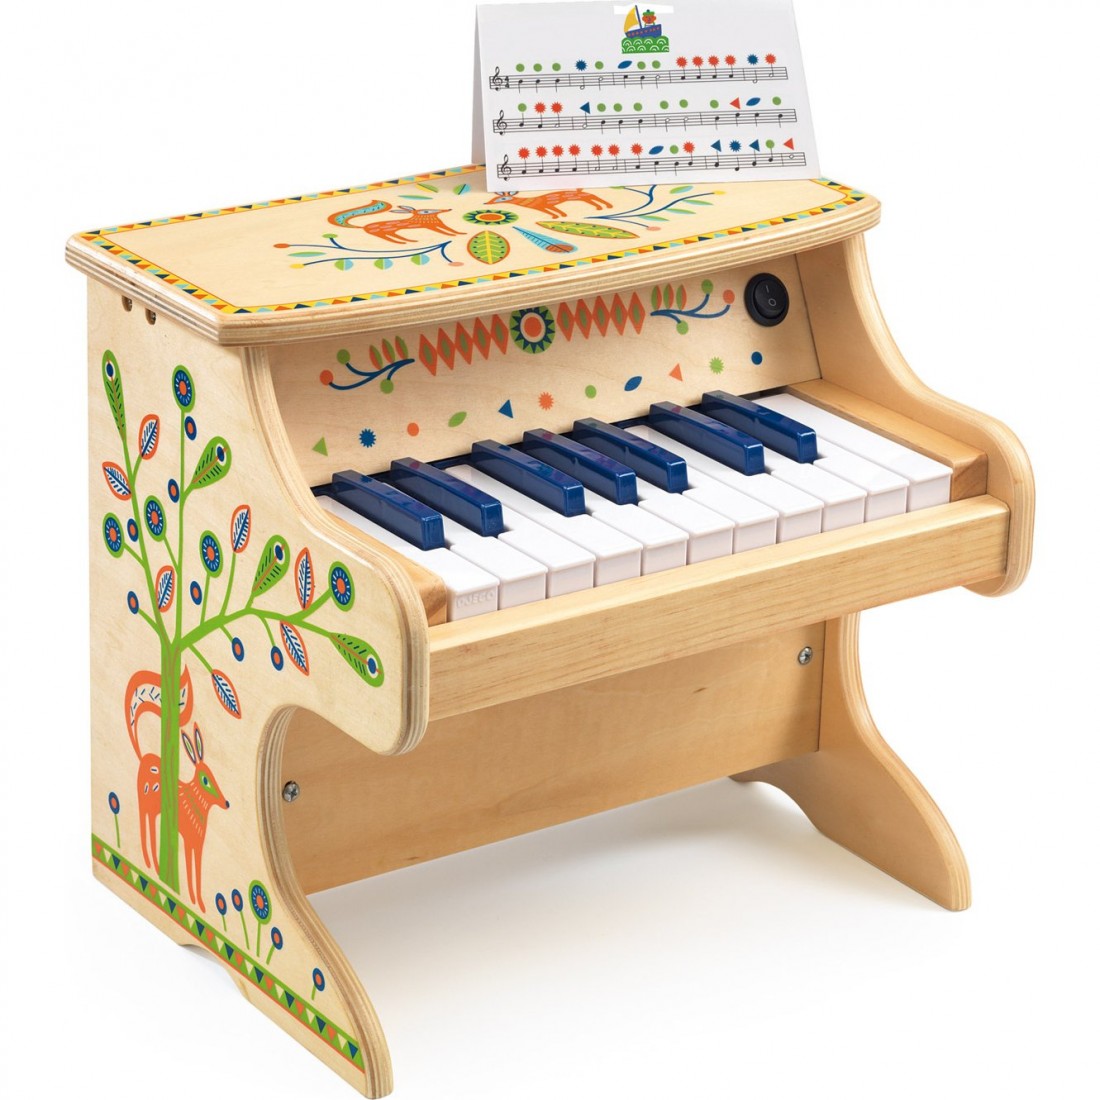 Piano à clavier pour enfant Clavier de piano pour enfants Portable Mini  dessin animé orgue électronique jouet RUIDA